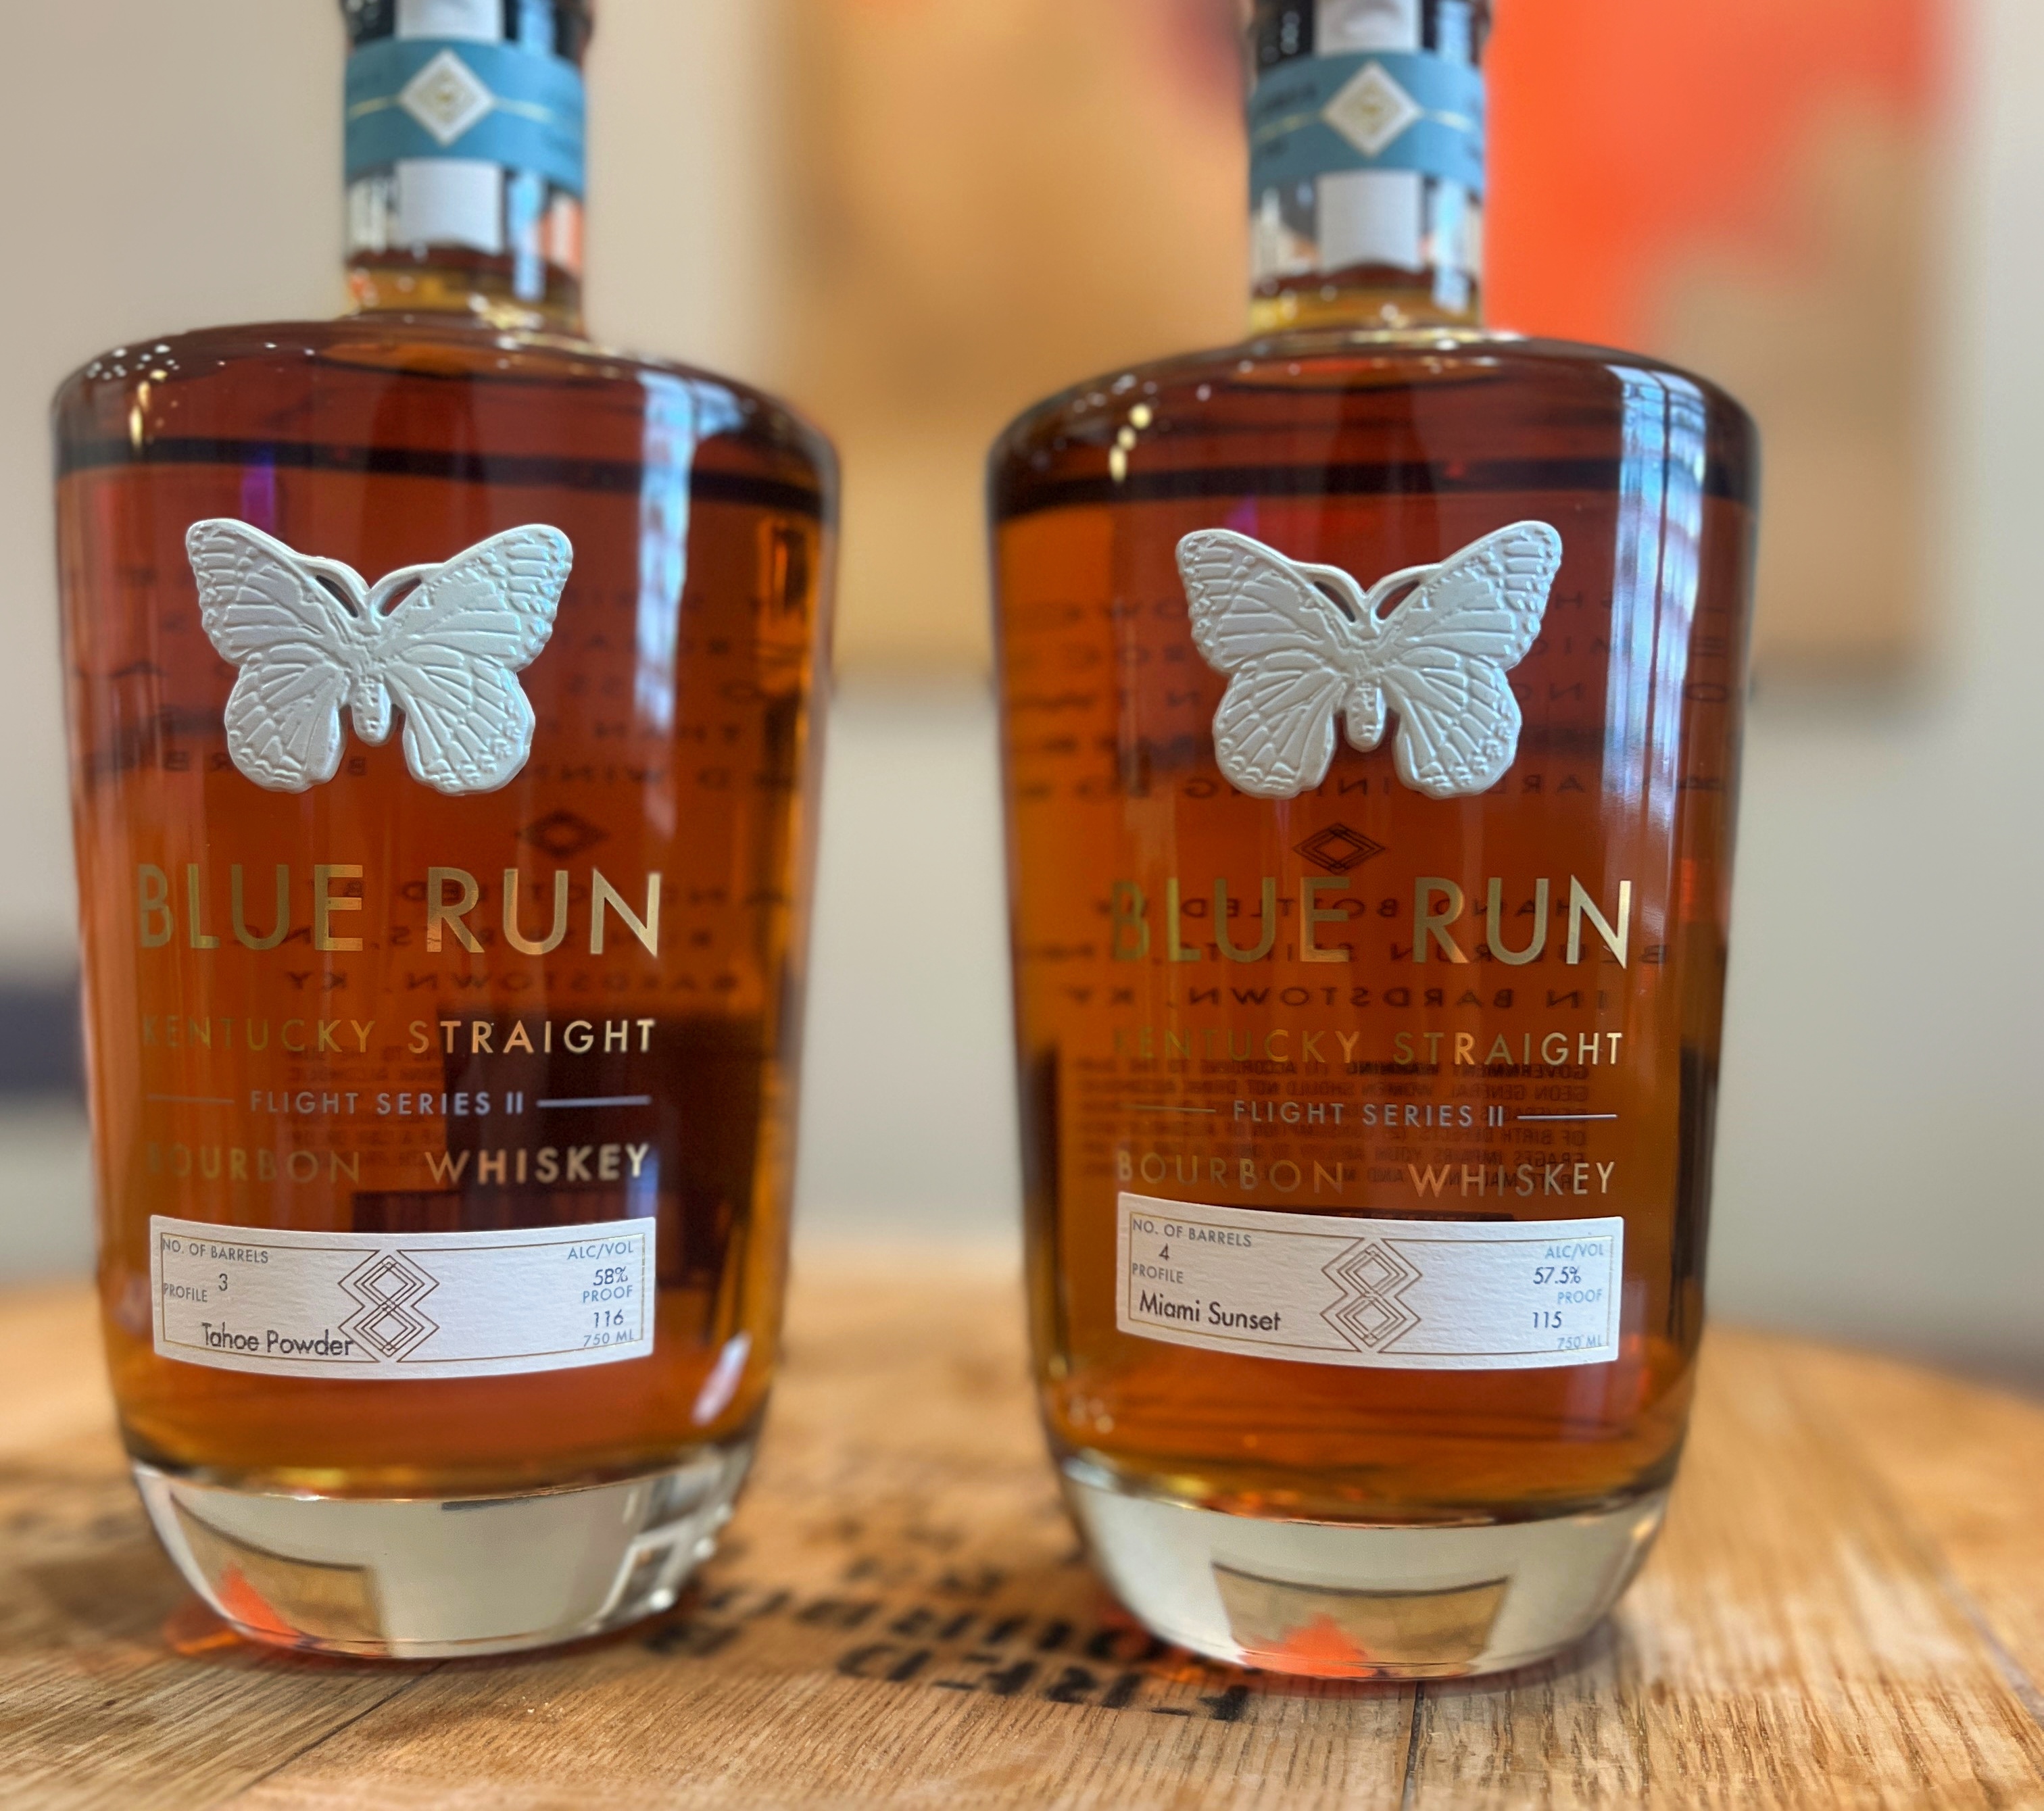 Blue Run Flight Series II straight Kentucky Bourbon Whiskey taste test side by side